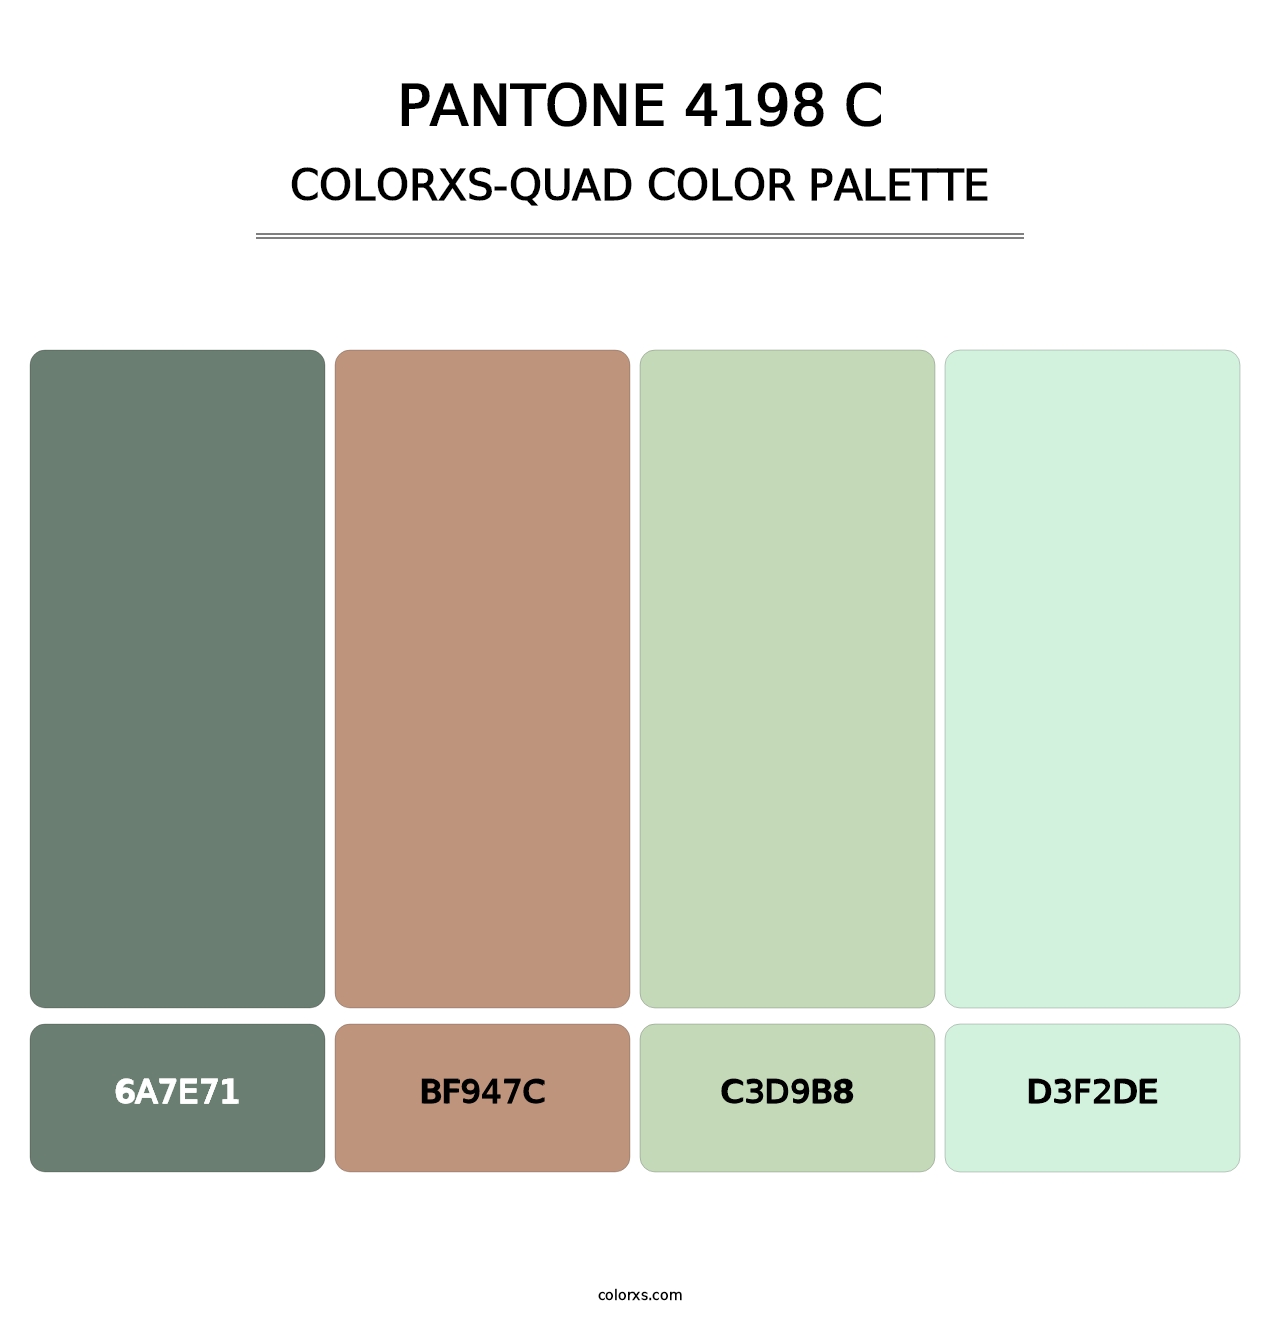 PANTONE 4198 C - Colorxs Quad Palette